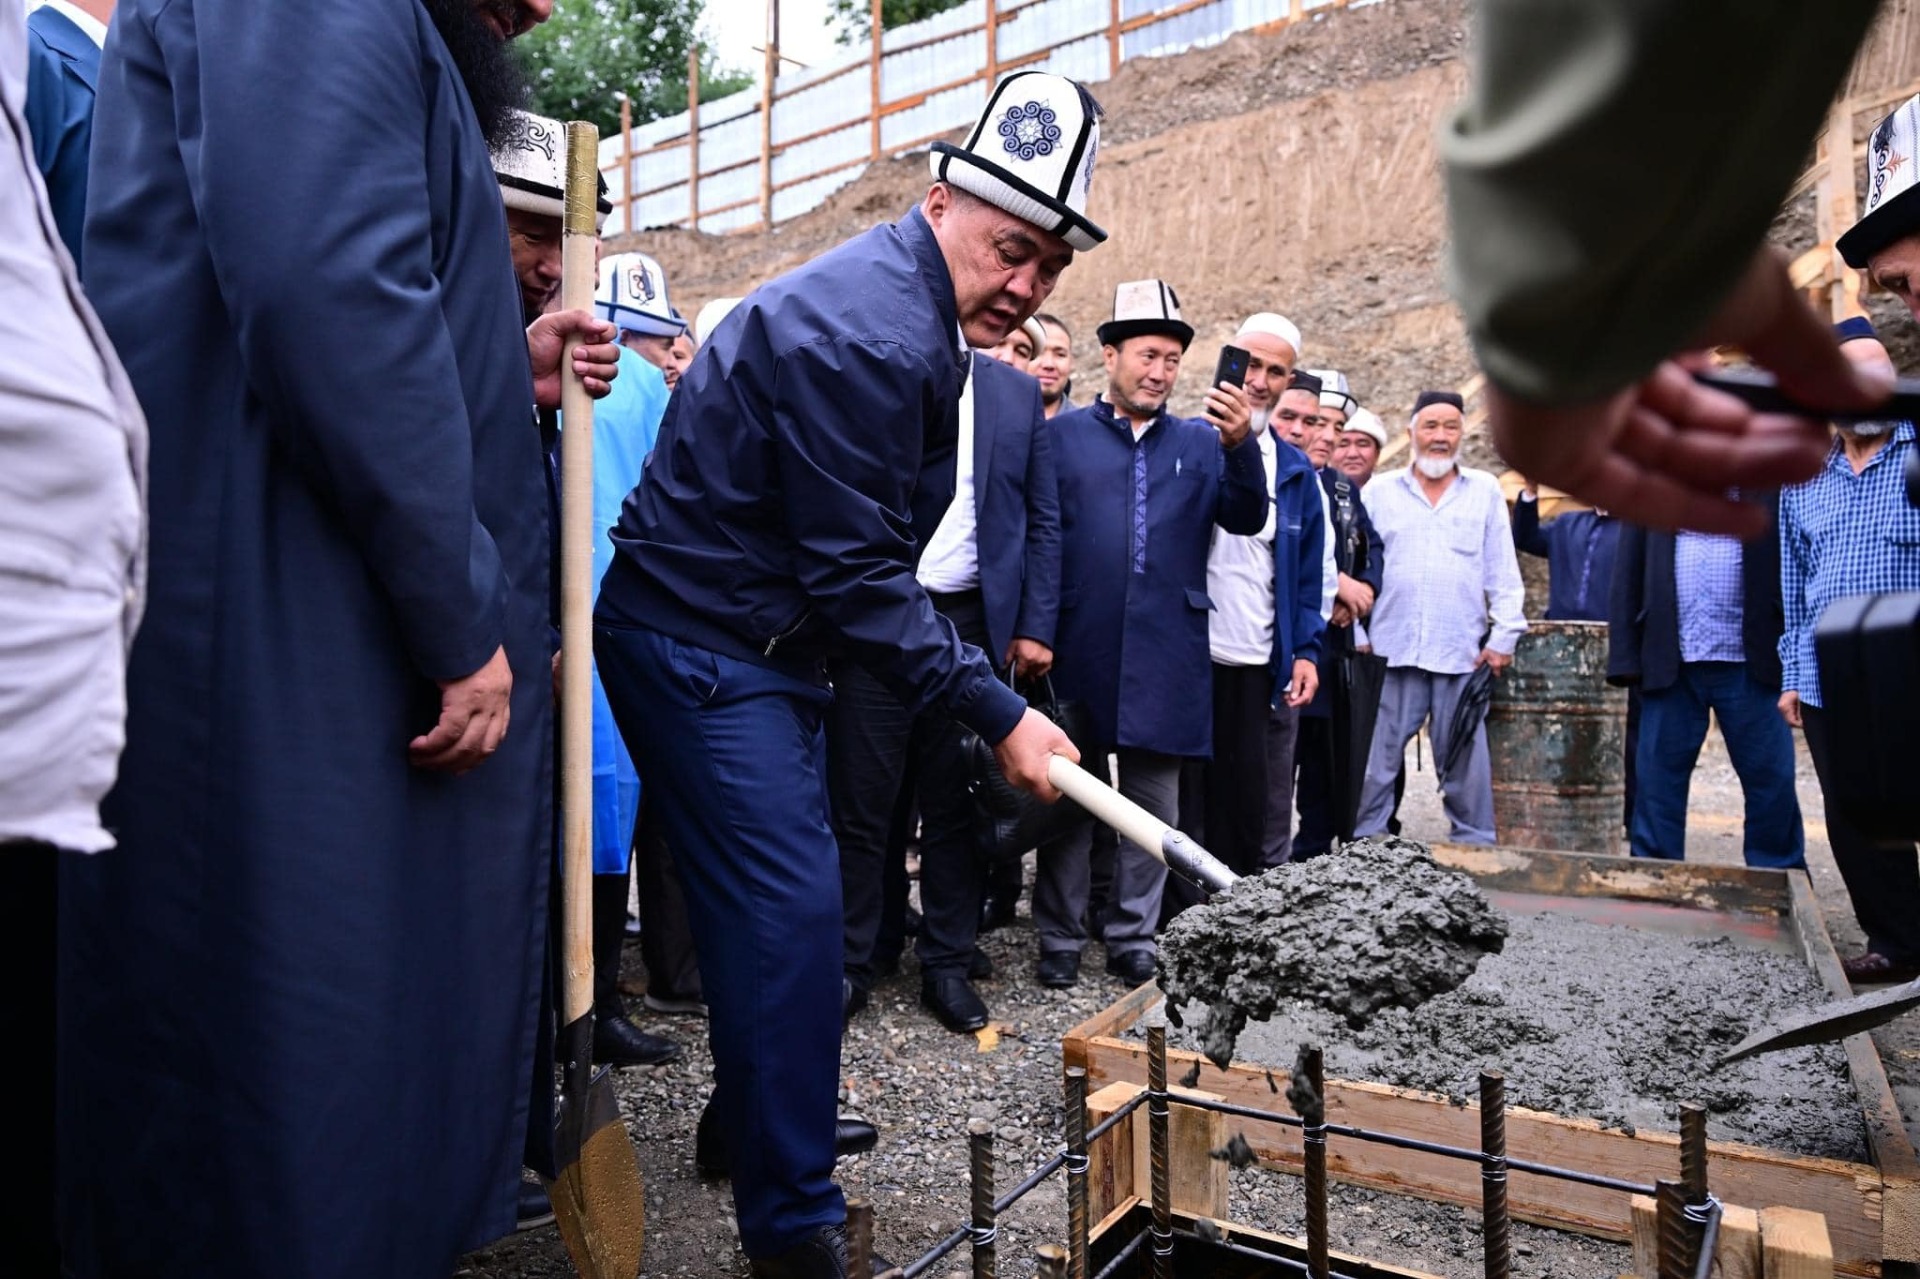 При финансовой поддержке Камчыбека Ташиева в Джалал-Абаде построят мечеть